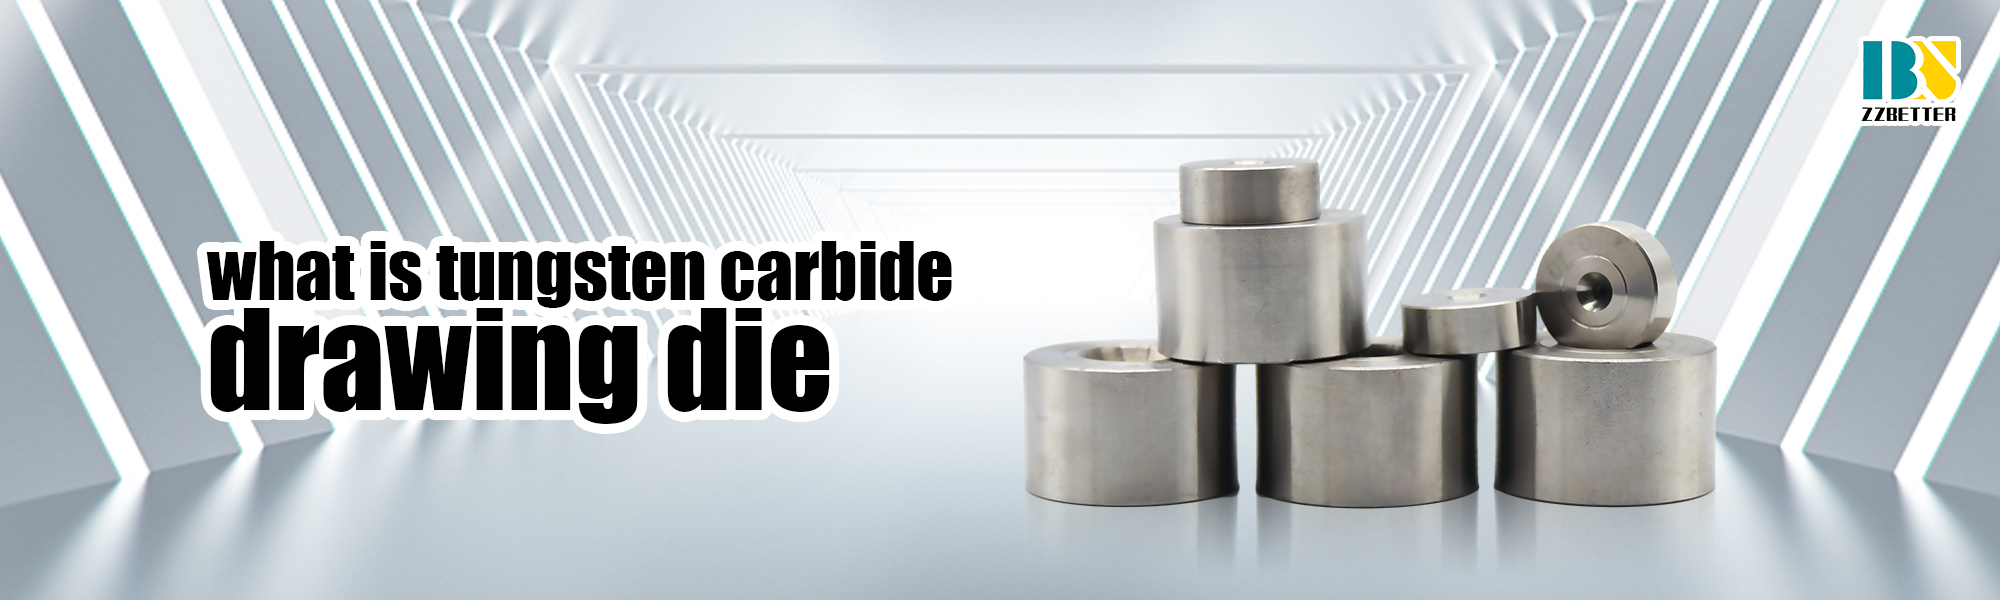 what is tungsten tungsten carbide drawing die?